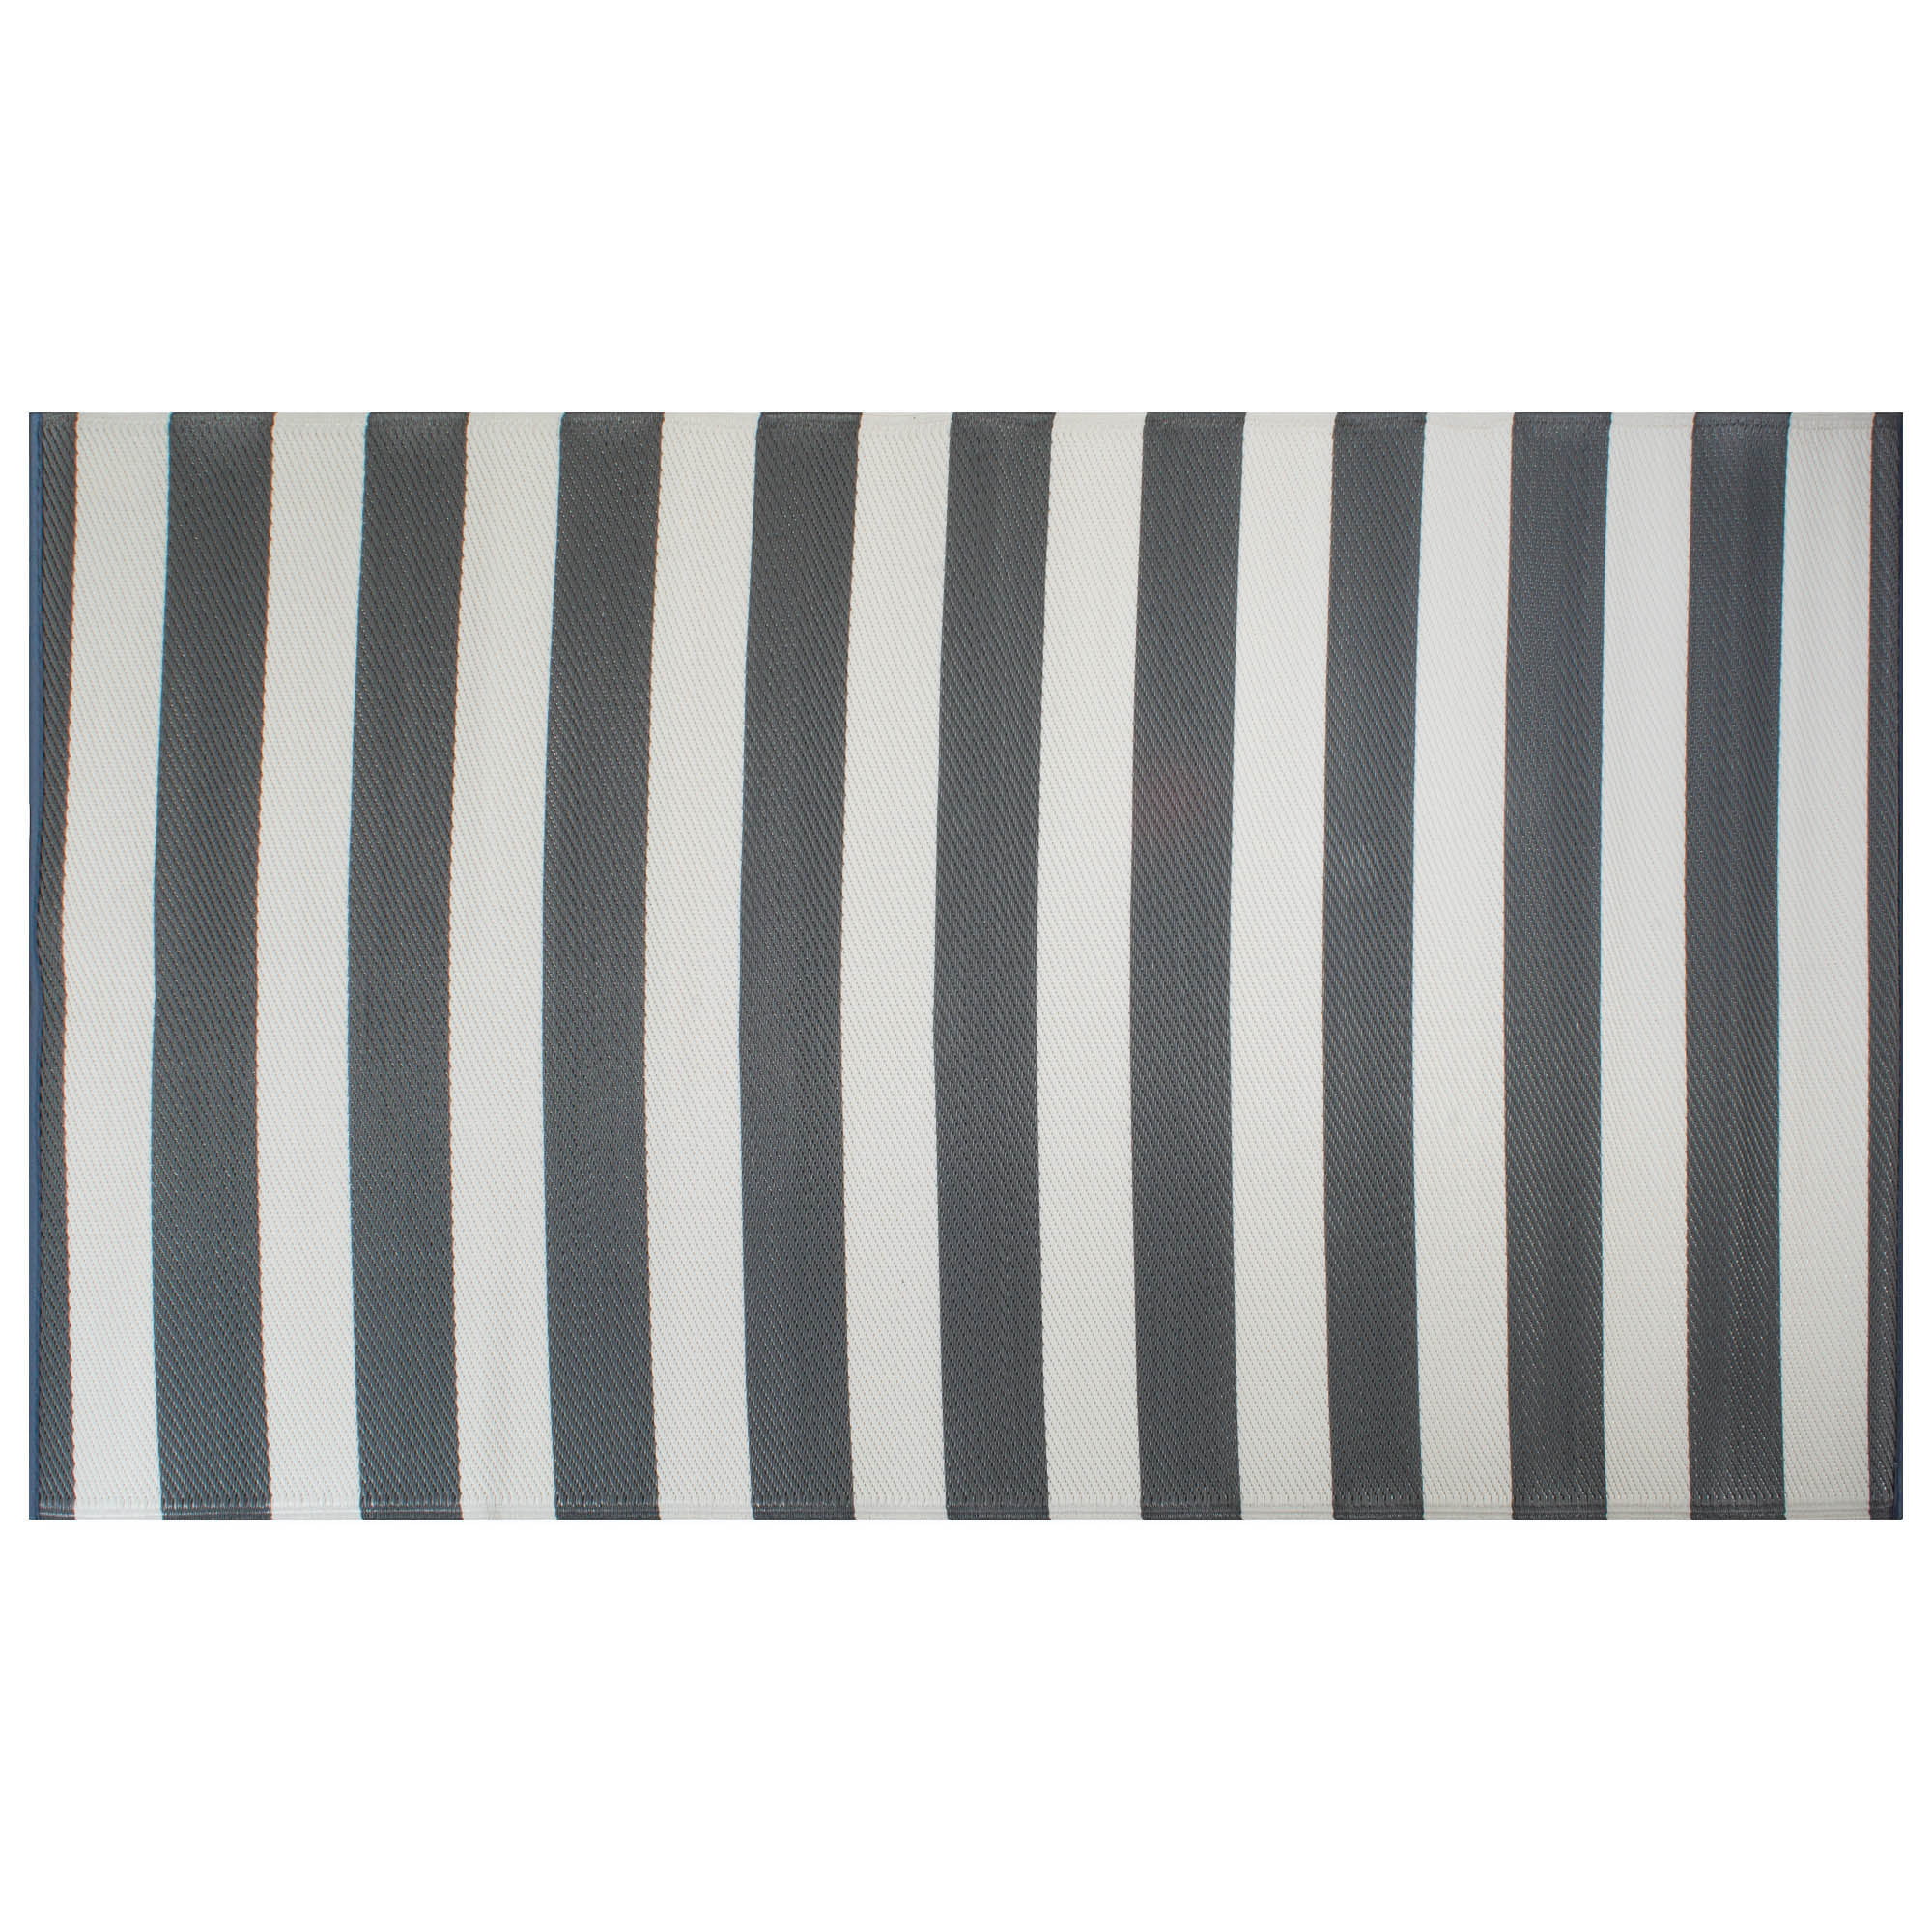 Indoor Outdoor Runner Floor Mat Striped Gray & White Reversible